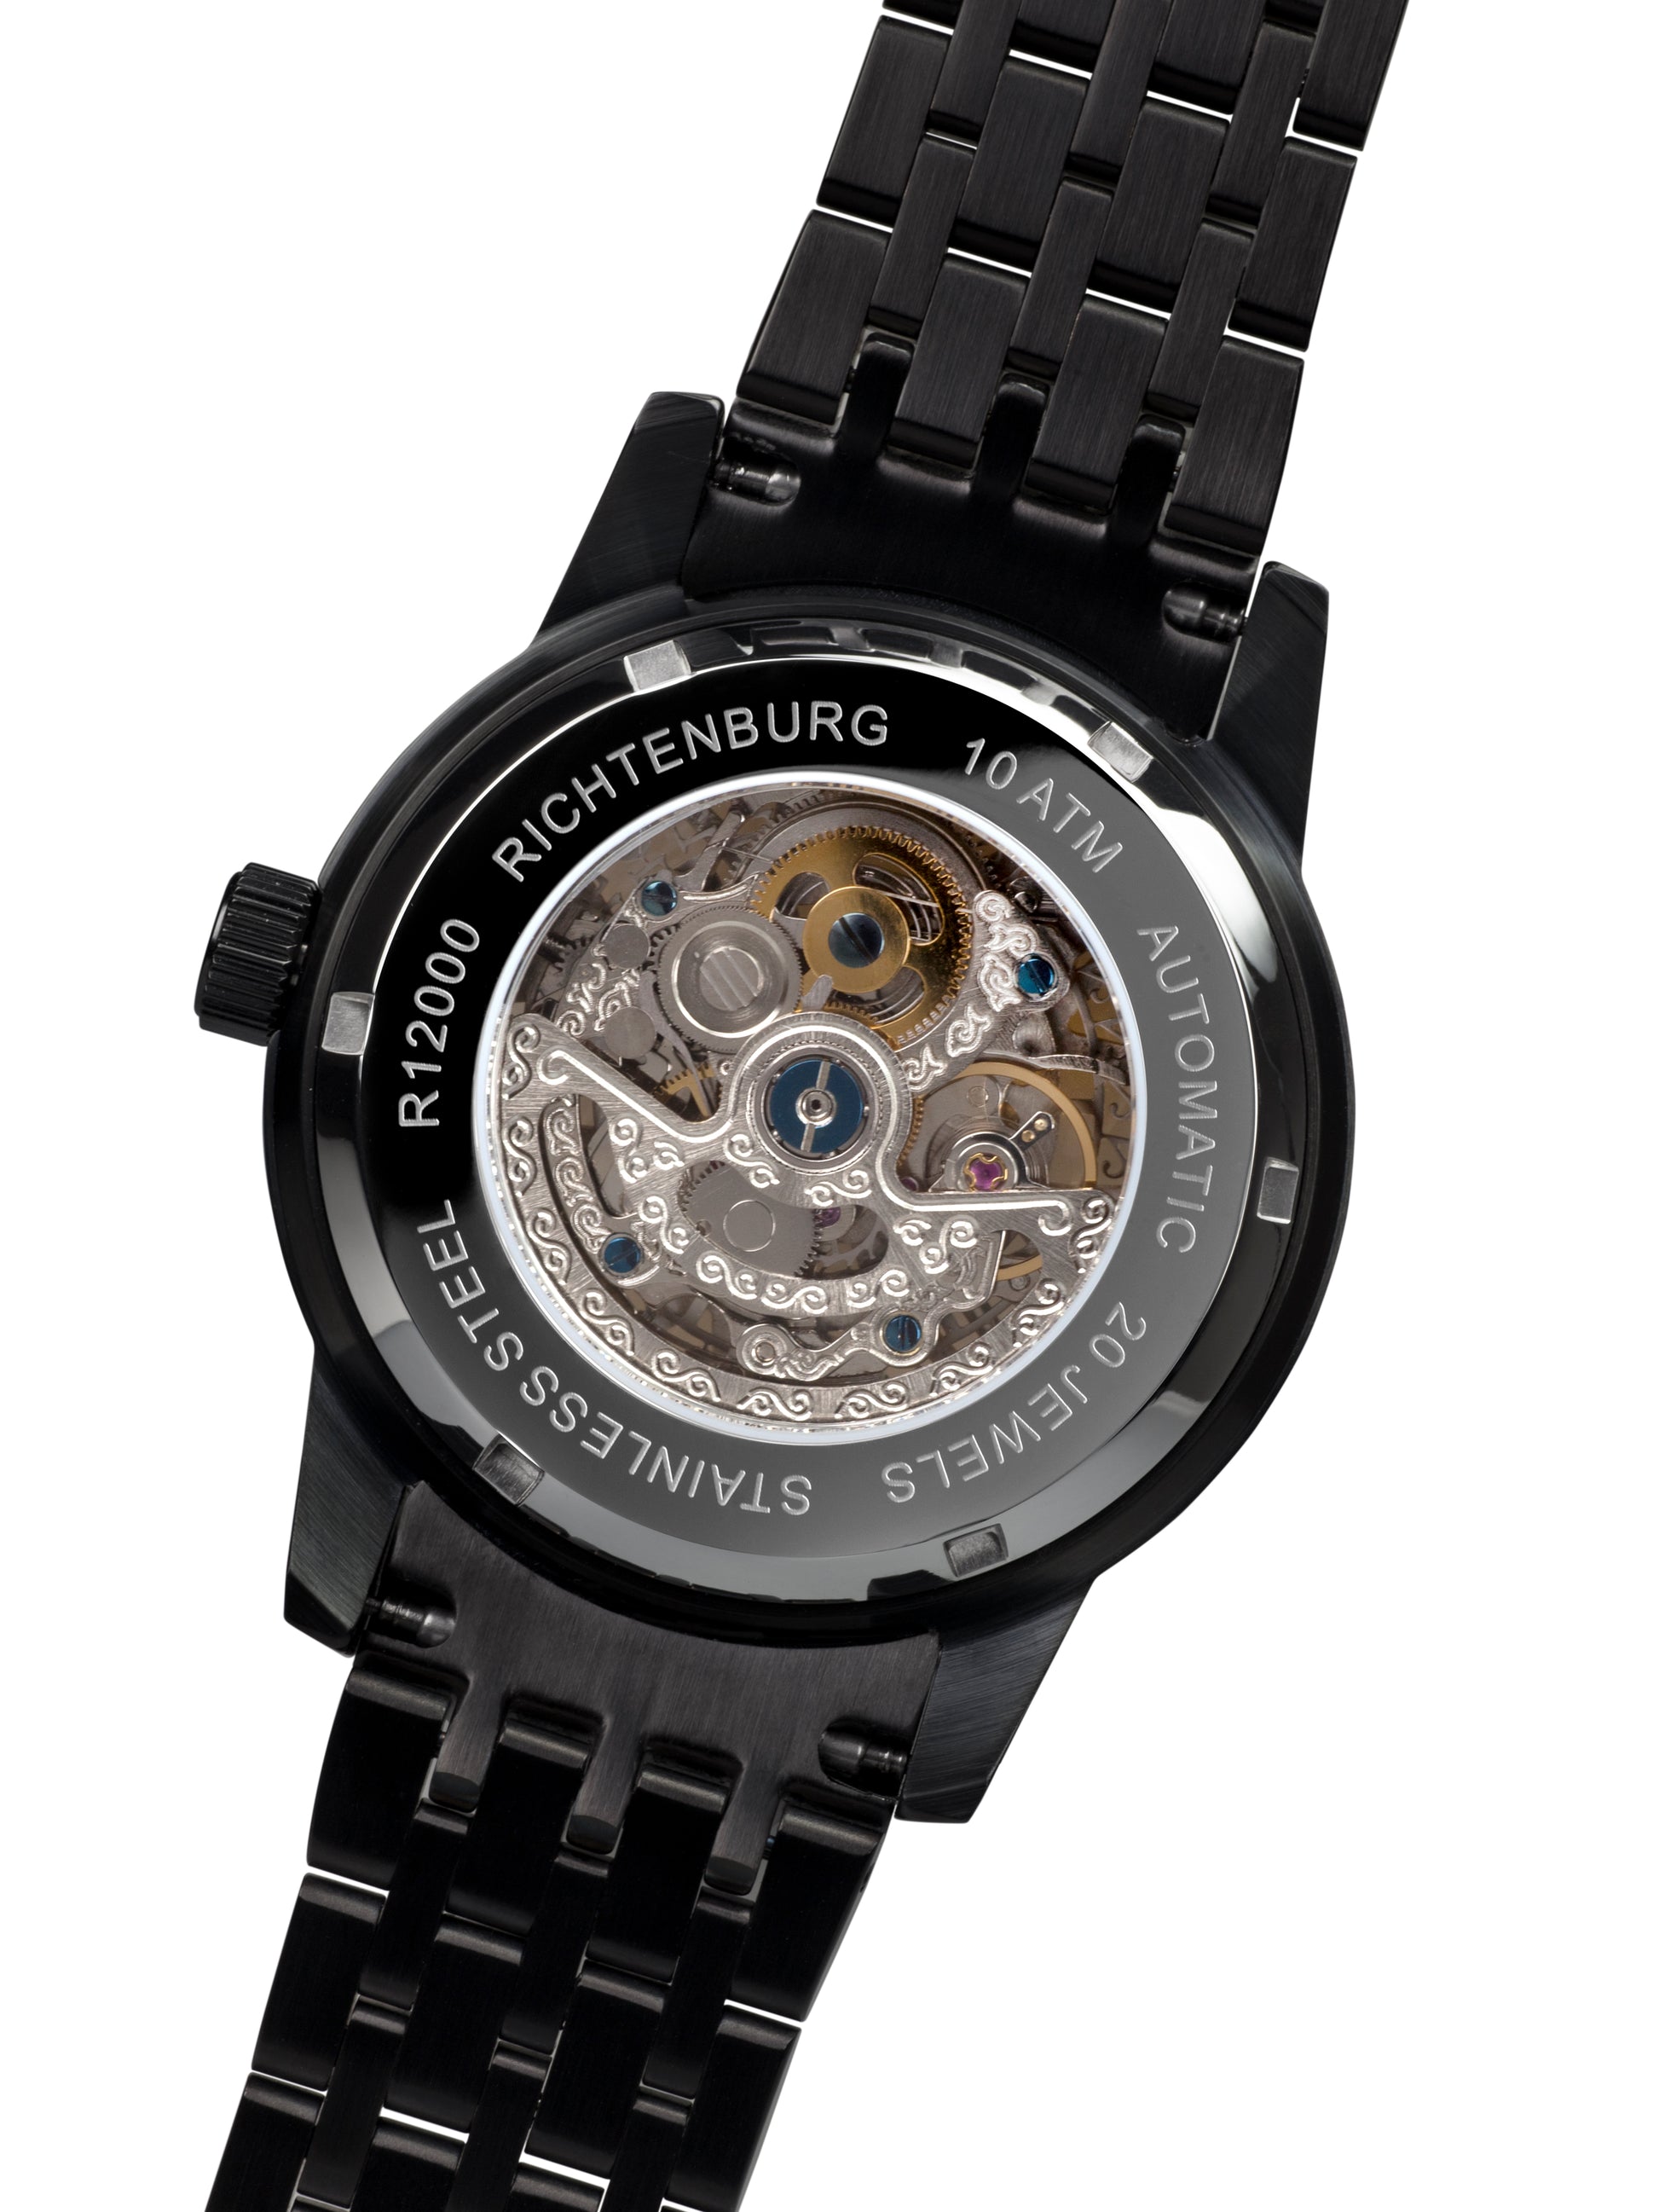 Automatic watches — Speedwheel — Richtenburg — black IP